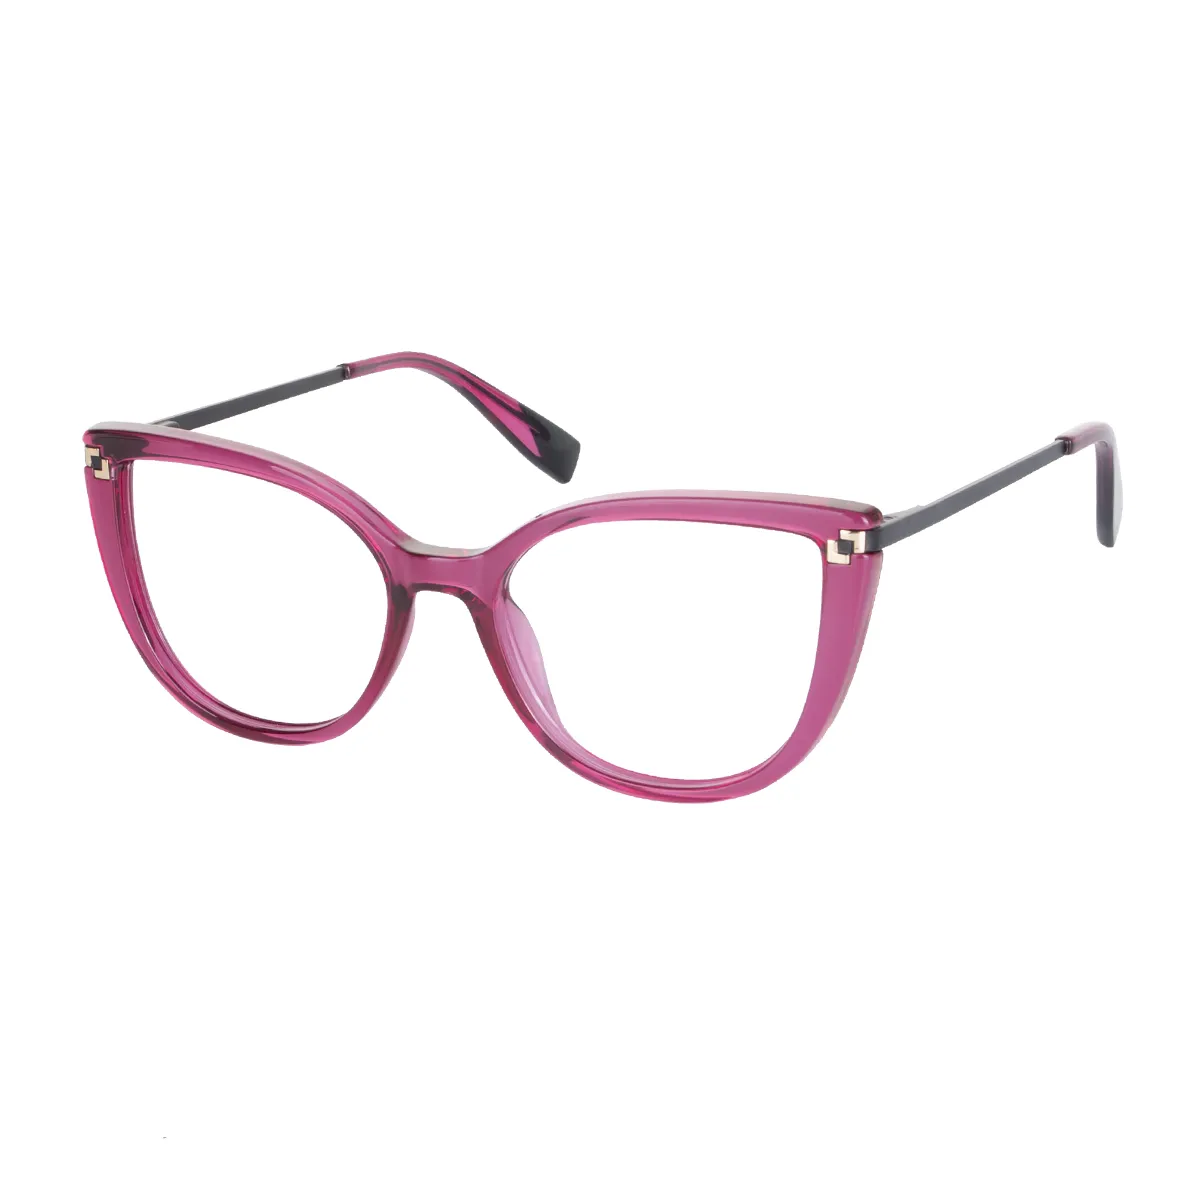 Julian - Cat-eye Dark Pink Glasses for Women - EFE